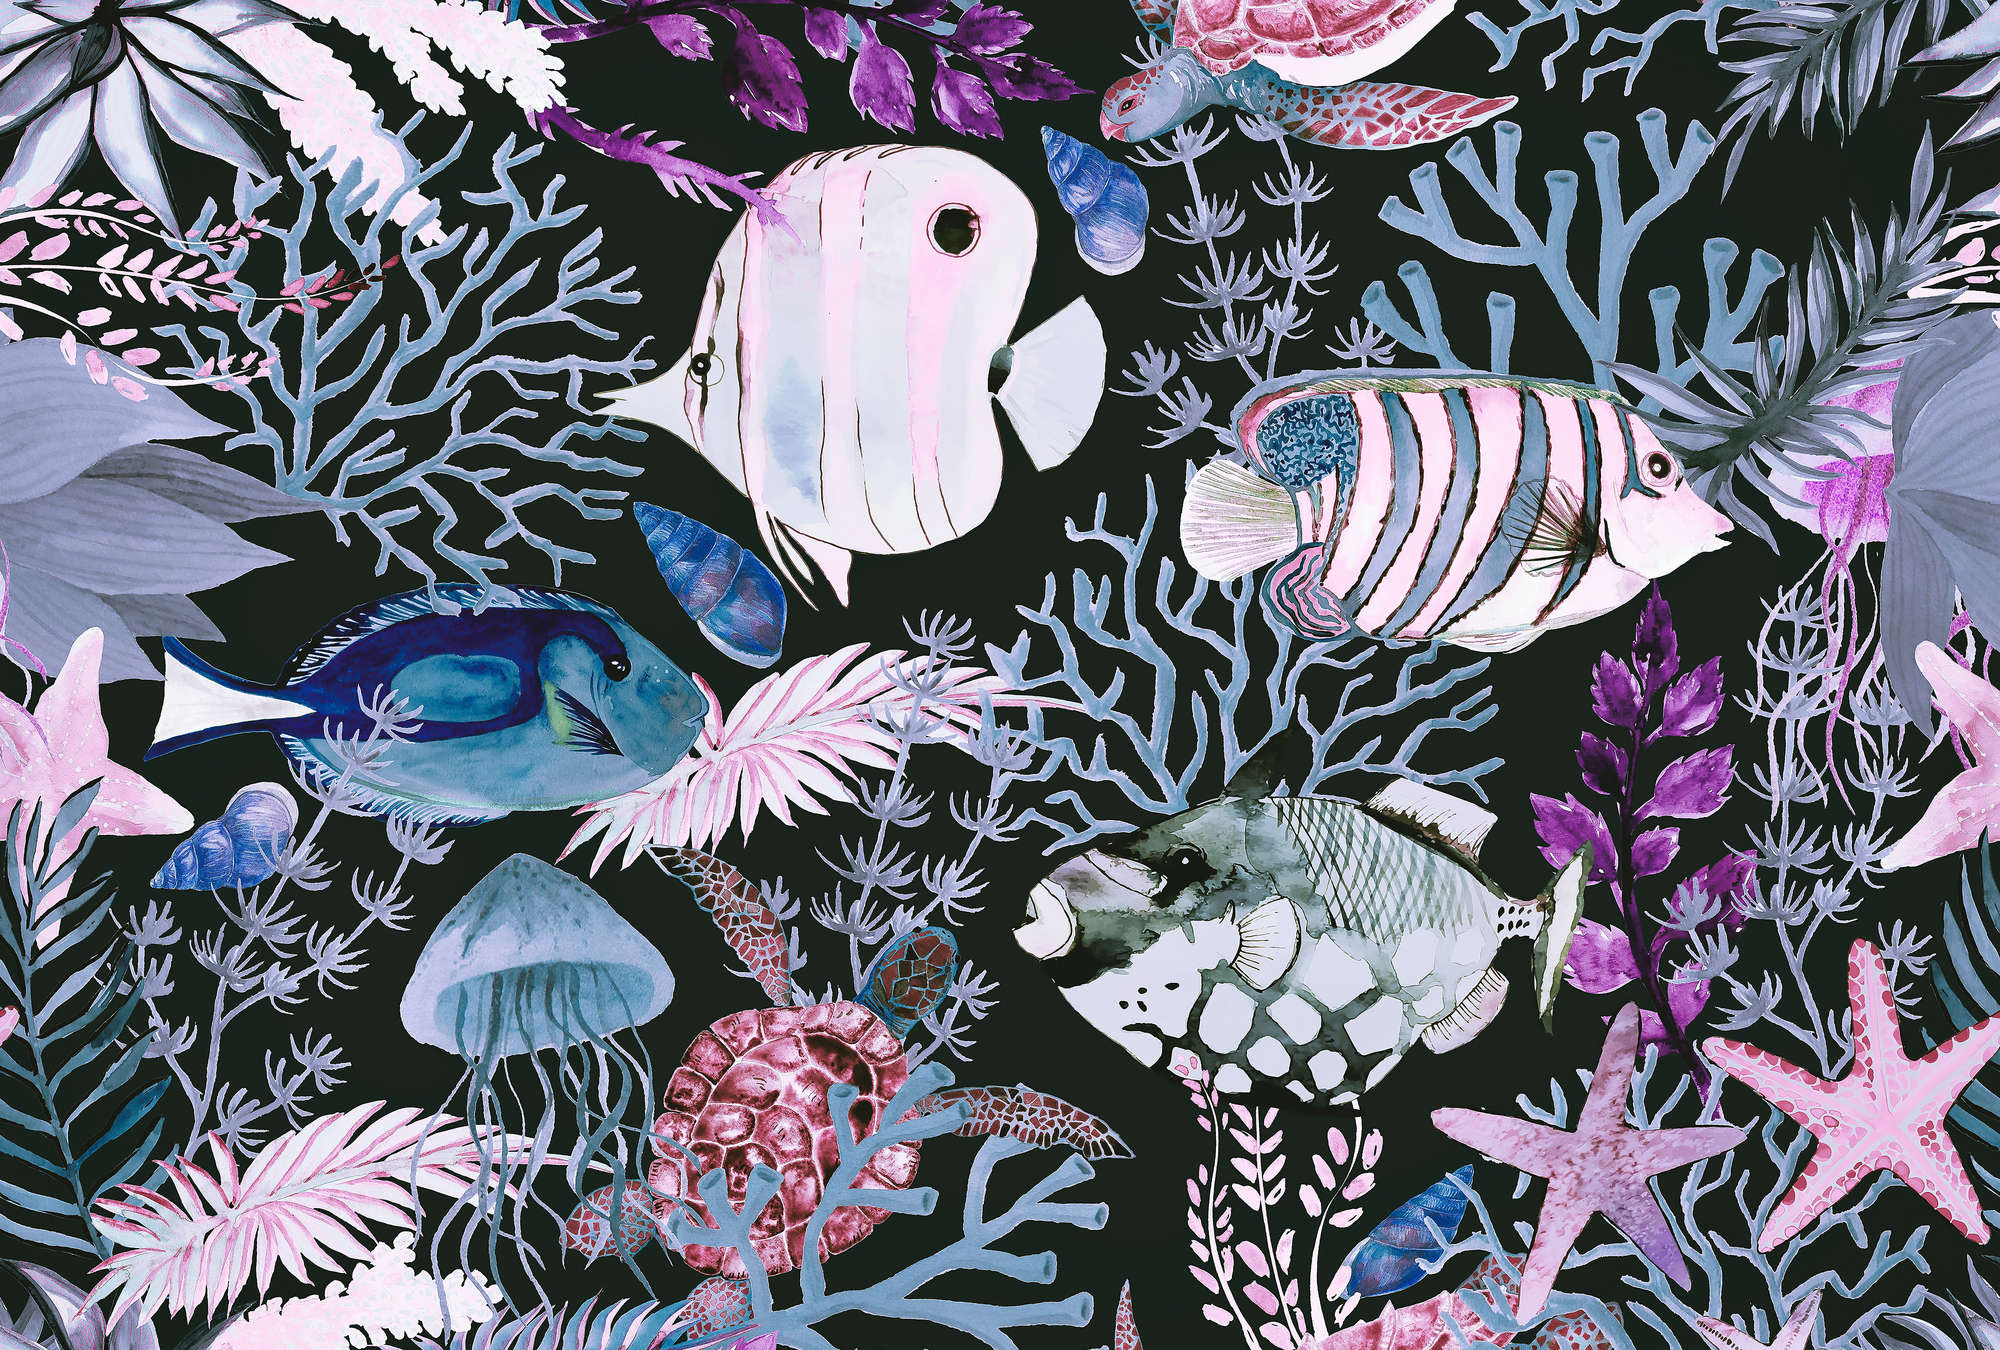             Unterwasser Fototapete mit Fischen & Korallen im Aquarell Stil
        